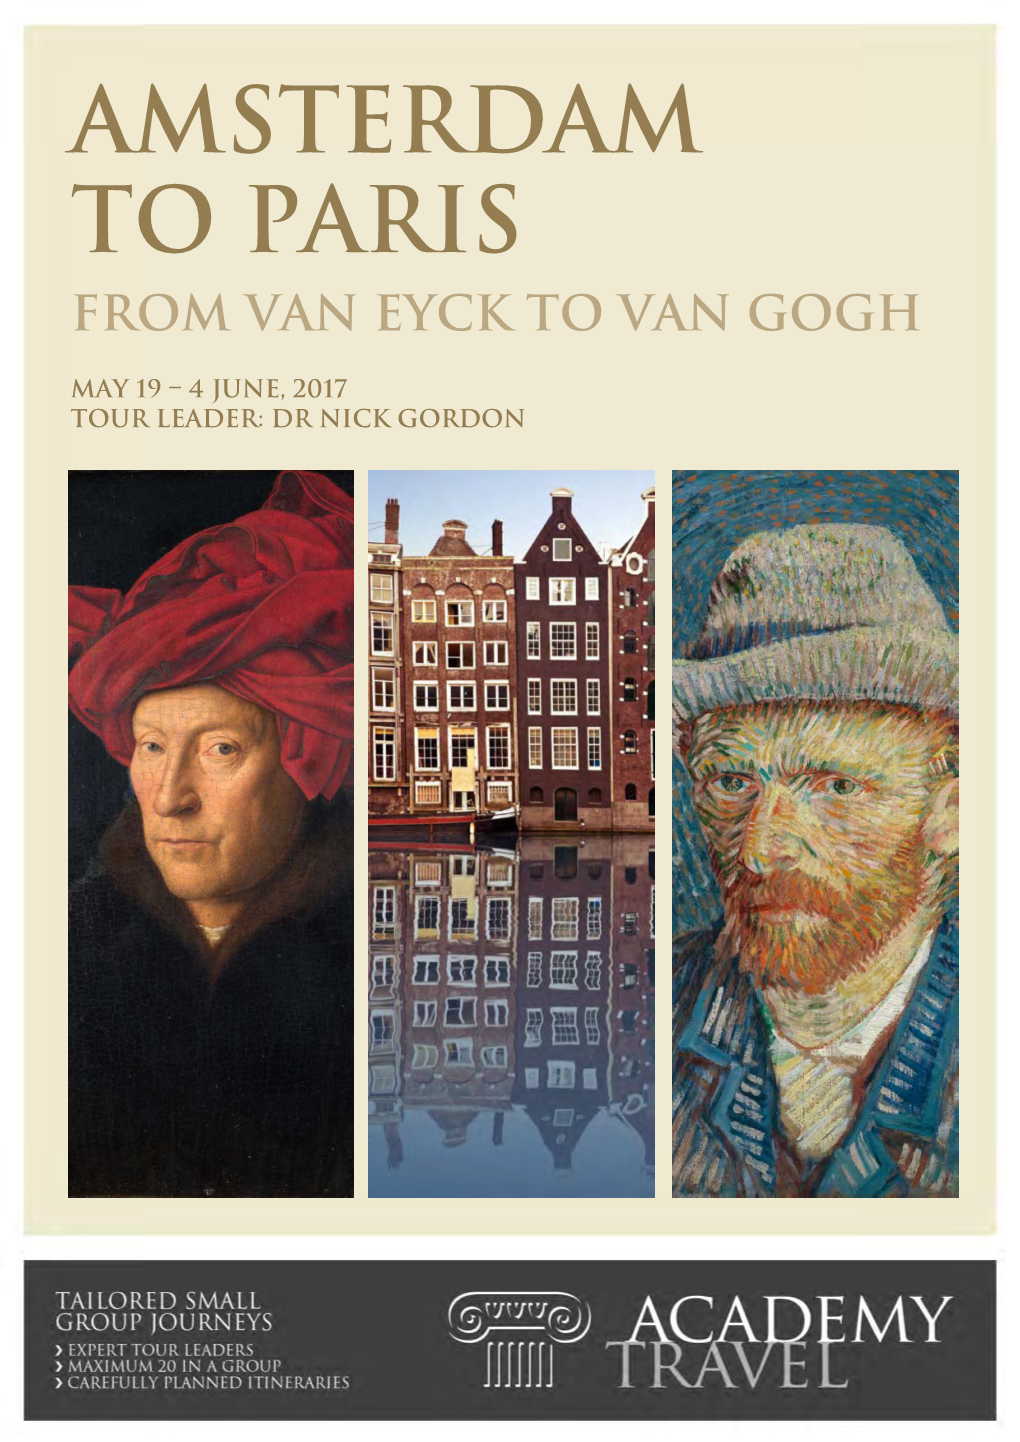 Amsterdam to Paris from Van Eyck to Van Gogh